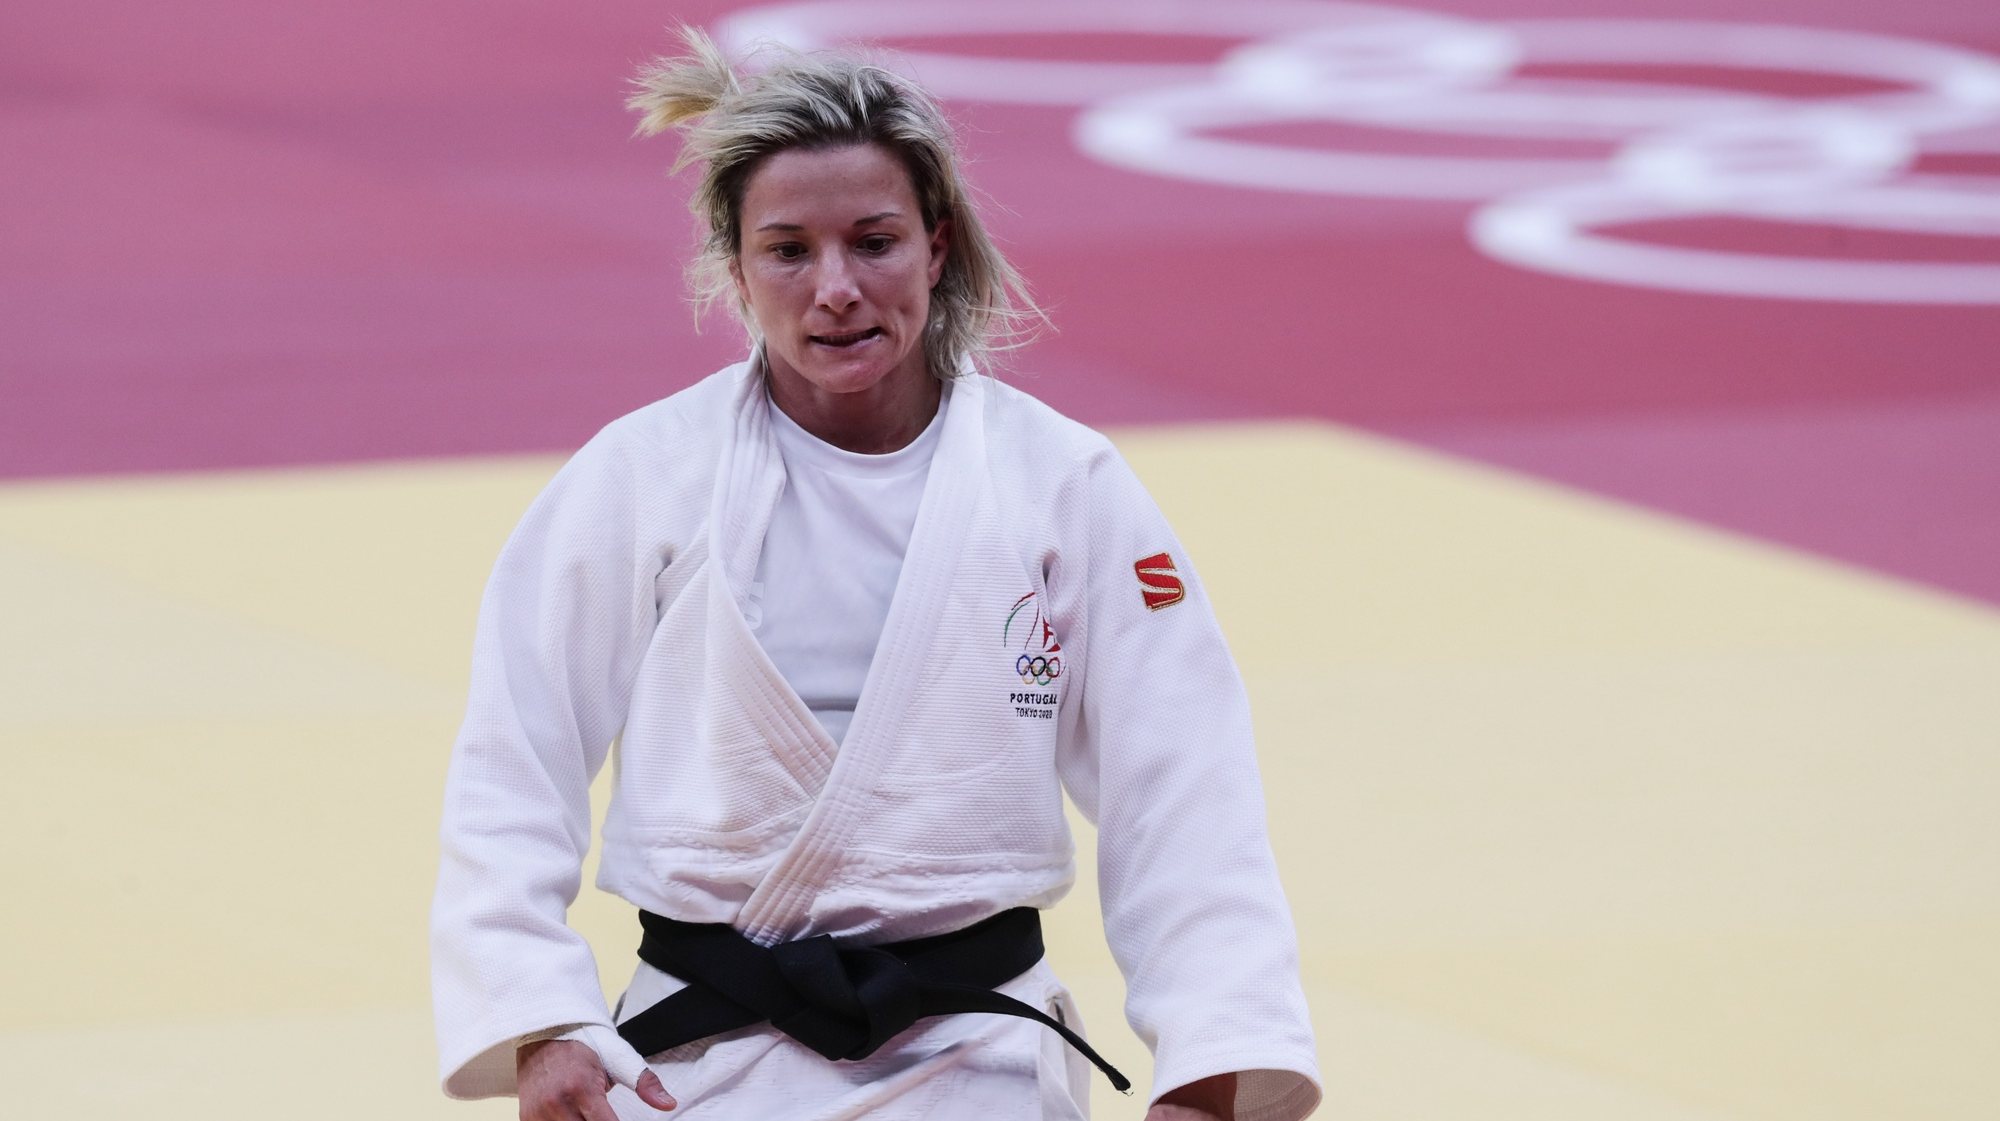 Costa diz que Telma Monteiro é uma lutadora e espera que recupere depressa